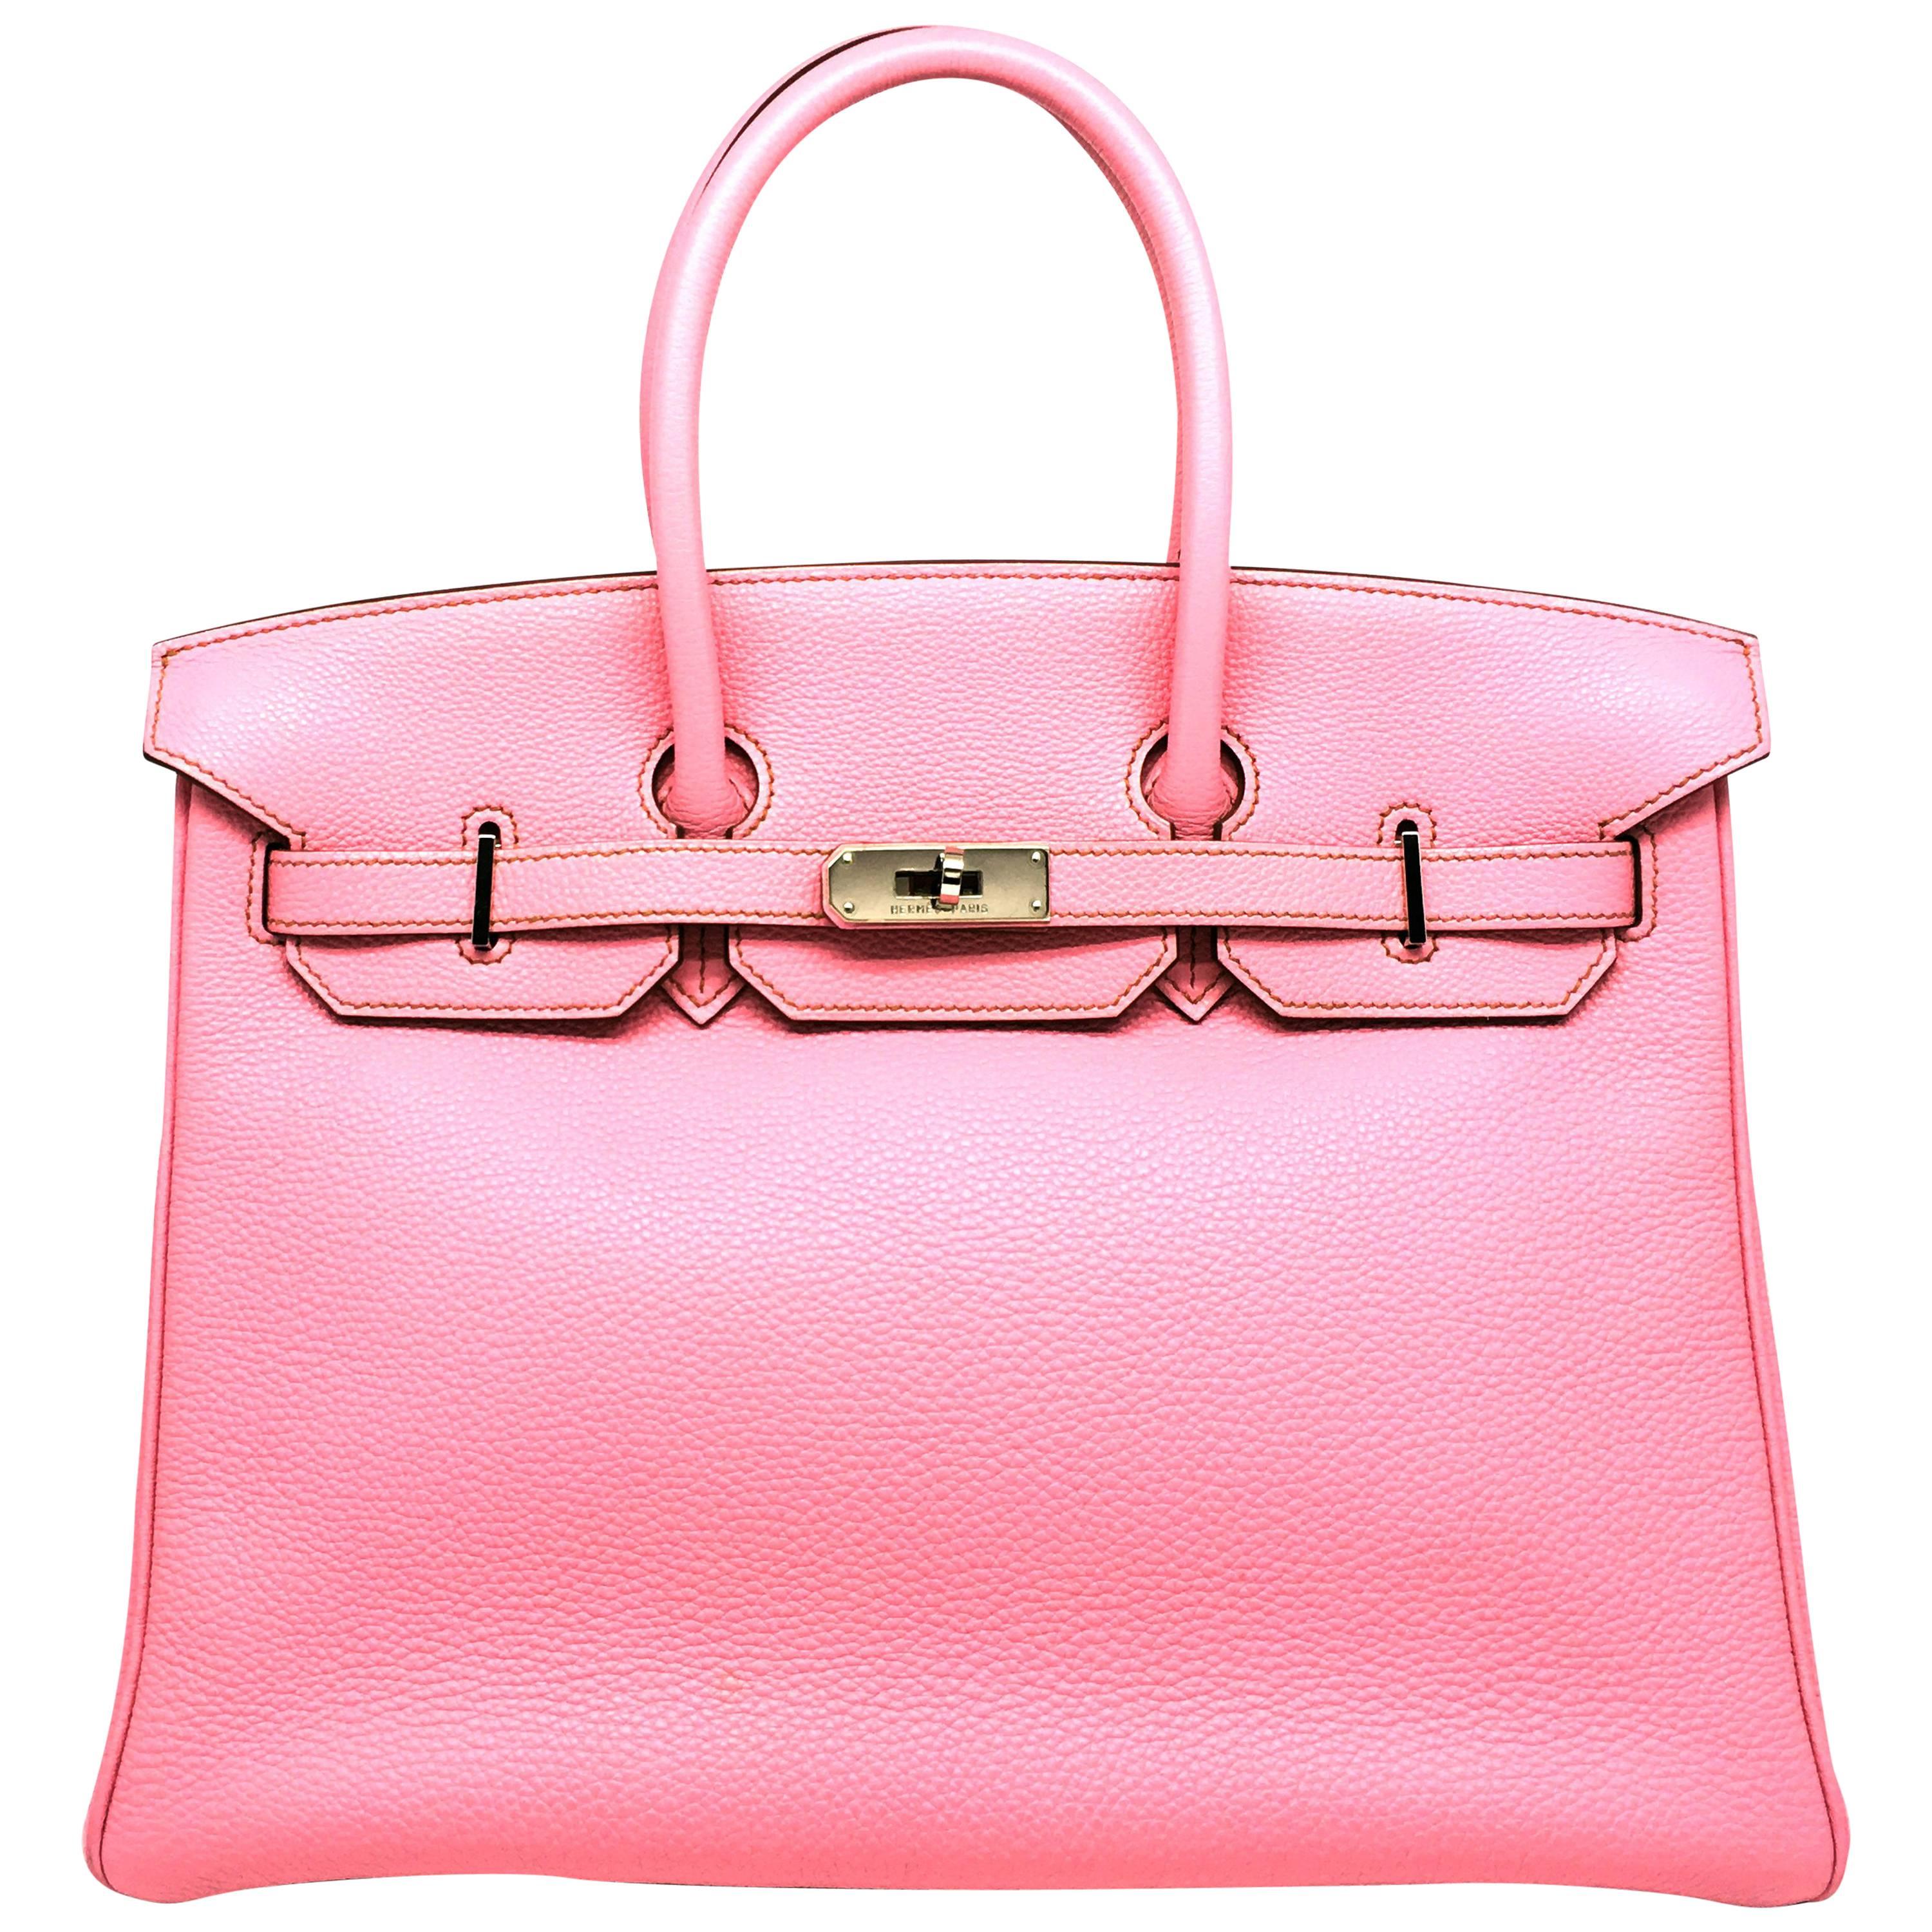 Hermes Birkin 35 Rose Shocking Pink Togo Leather Silver Metal Top Handle Bag